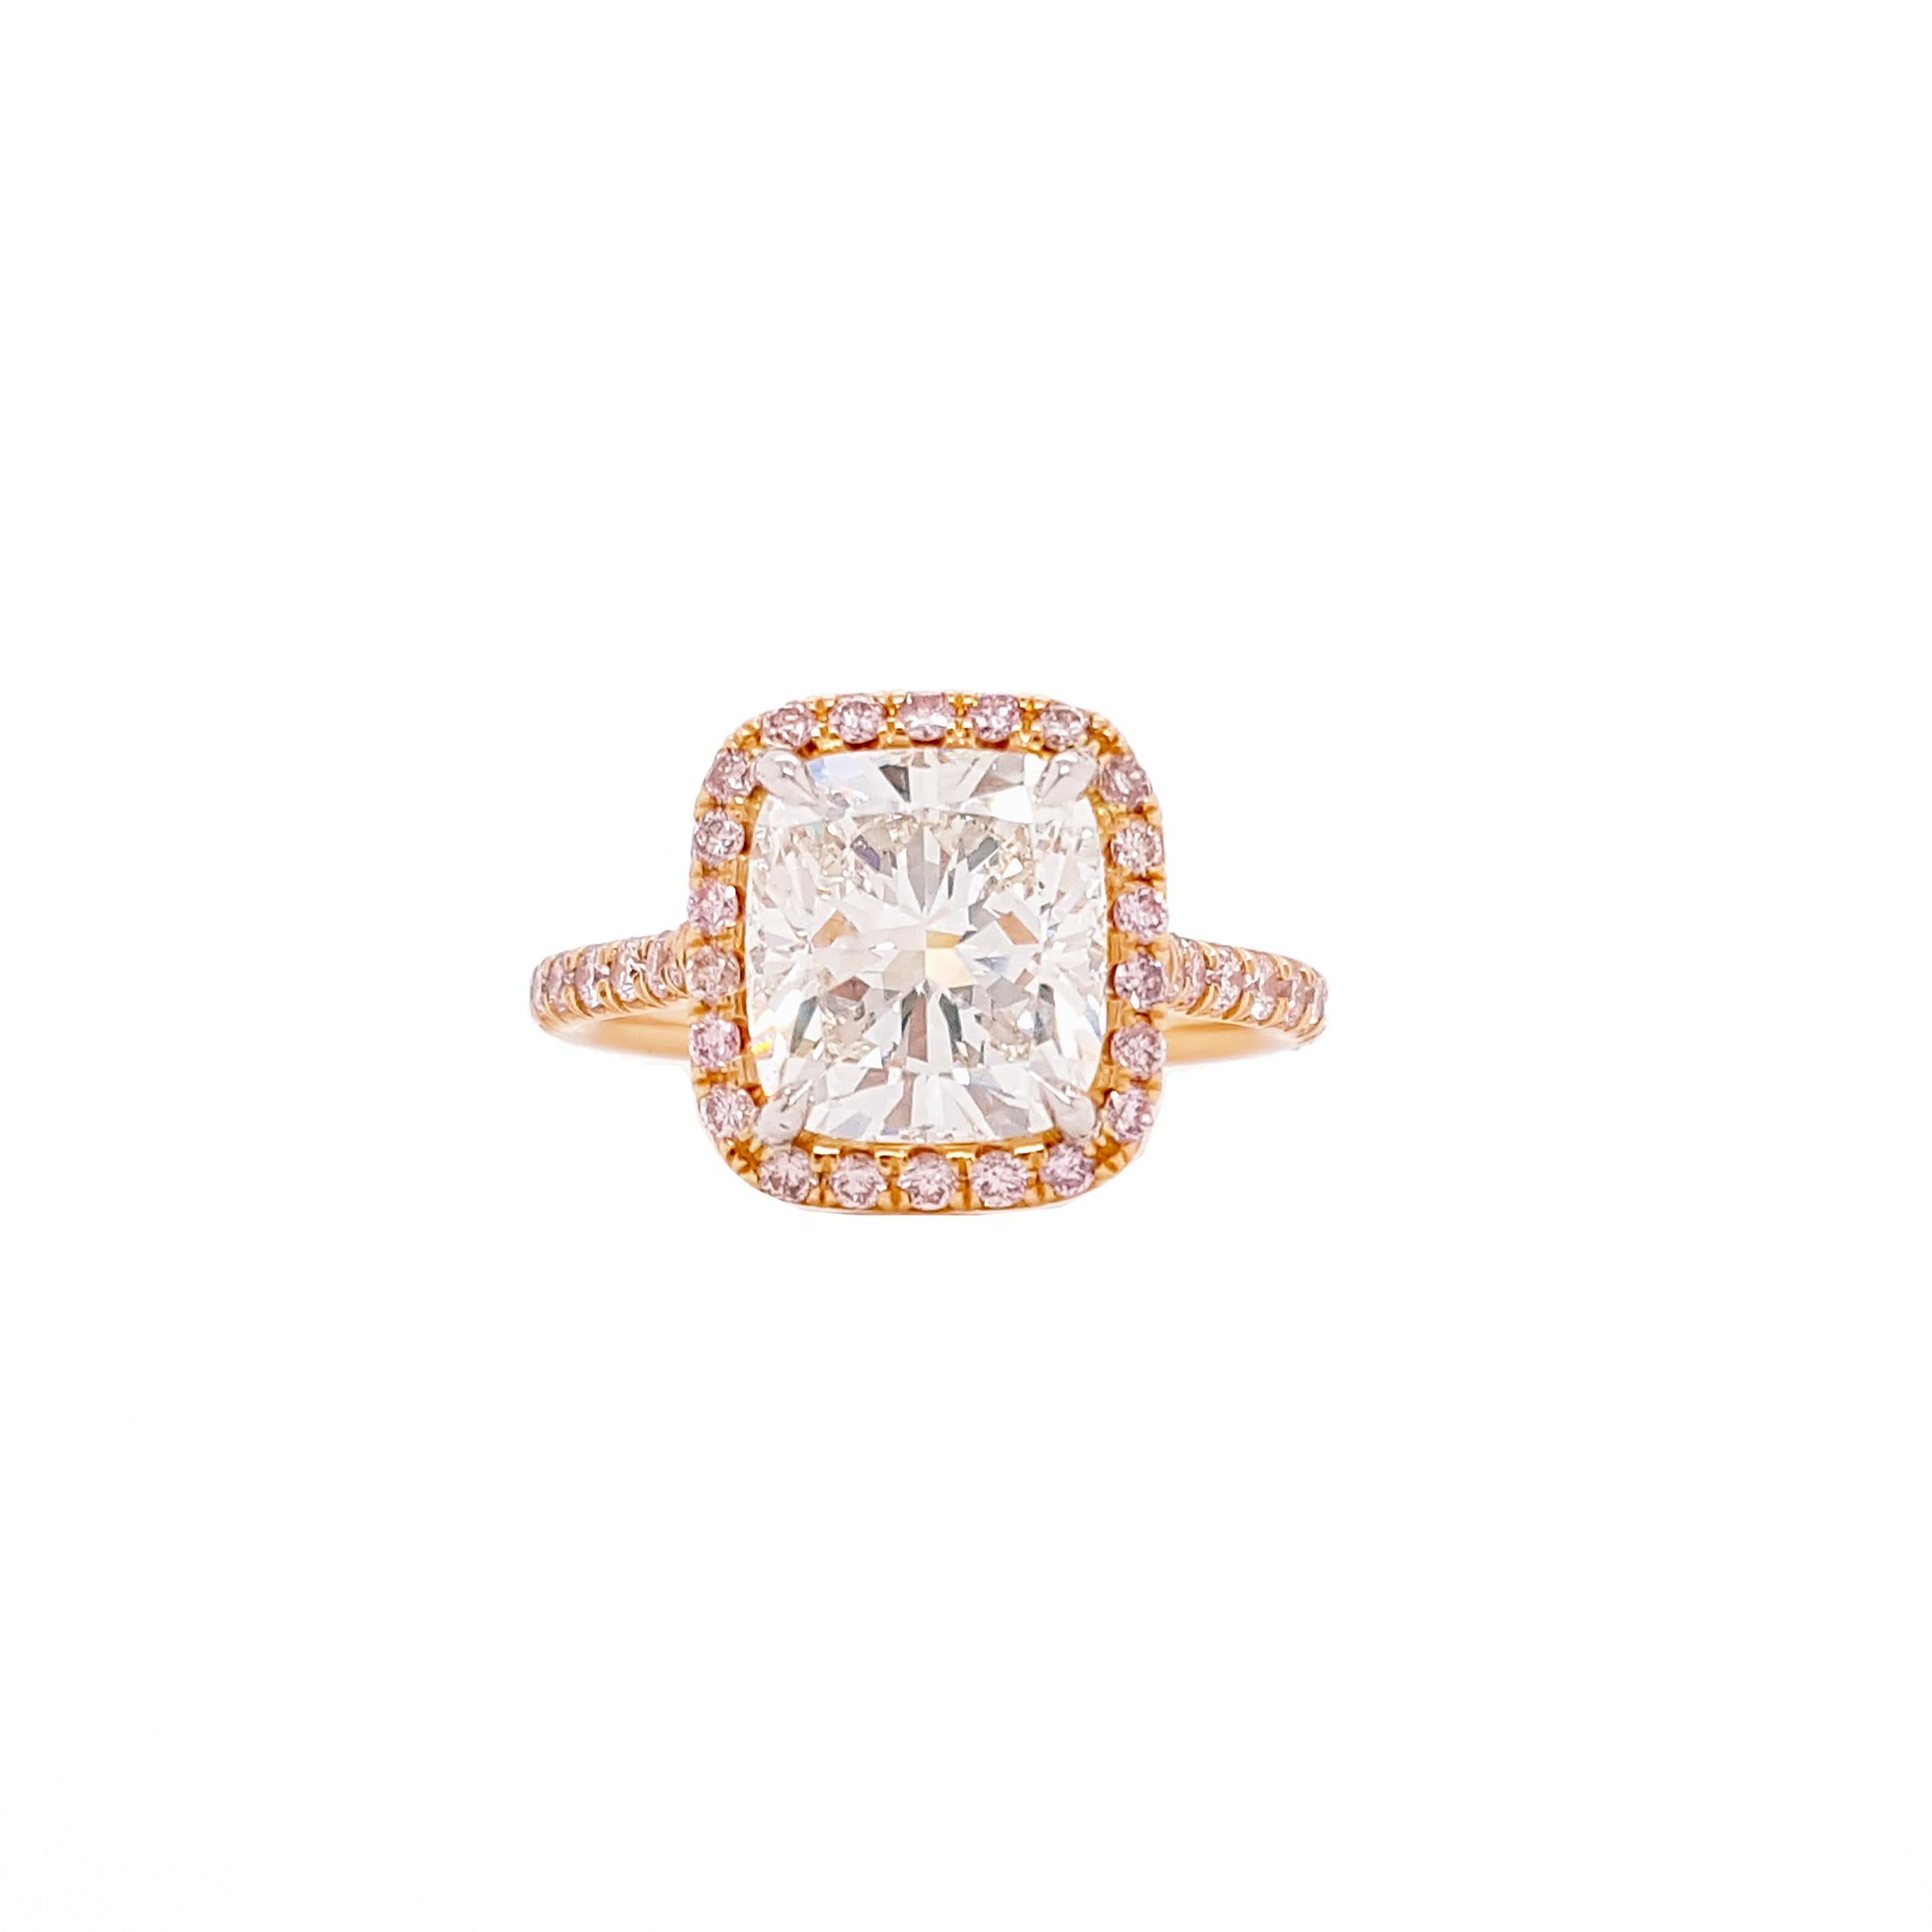 Verlobungsring mit einem 3,5-Karat-Diamanten im Kissenschliff, zertifiziert von GIA als Farbe I, Reinheit VS2. Das klassische Design bringt die Schönheit des Mittelsteins mit den ihn umgebenden 42 runden rosafarbenen Diamanten zur Geltung, die in